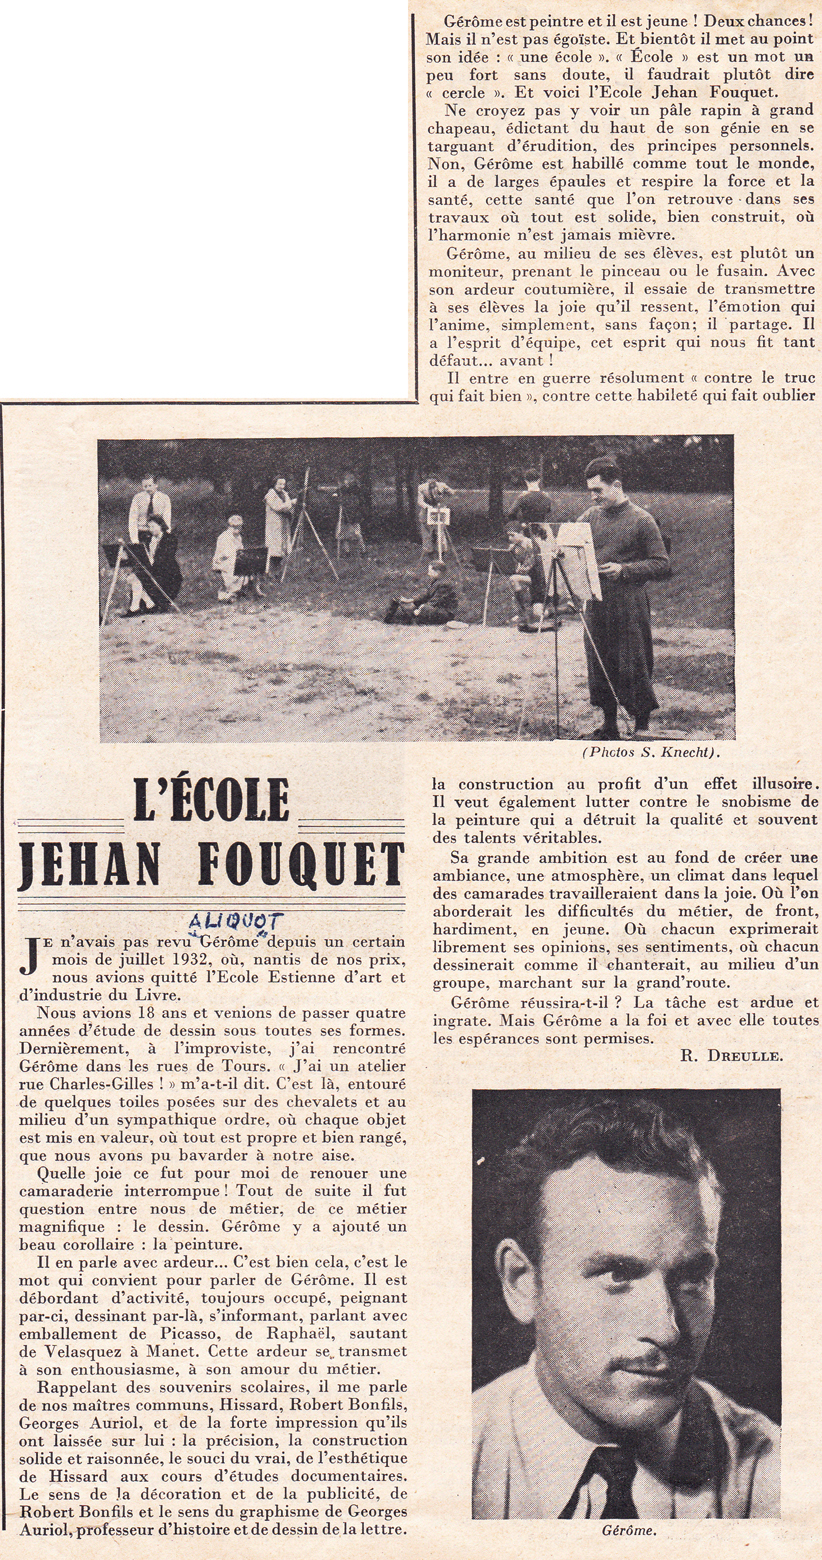 1941 - création de l'école Jehan Fouquet à Tours - La Dépêche de Tours article de R. Dreulle